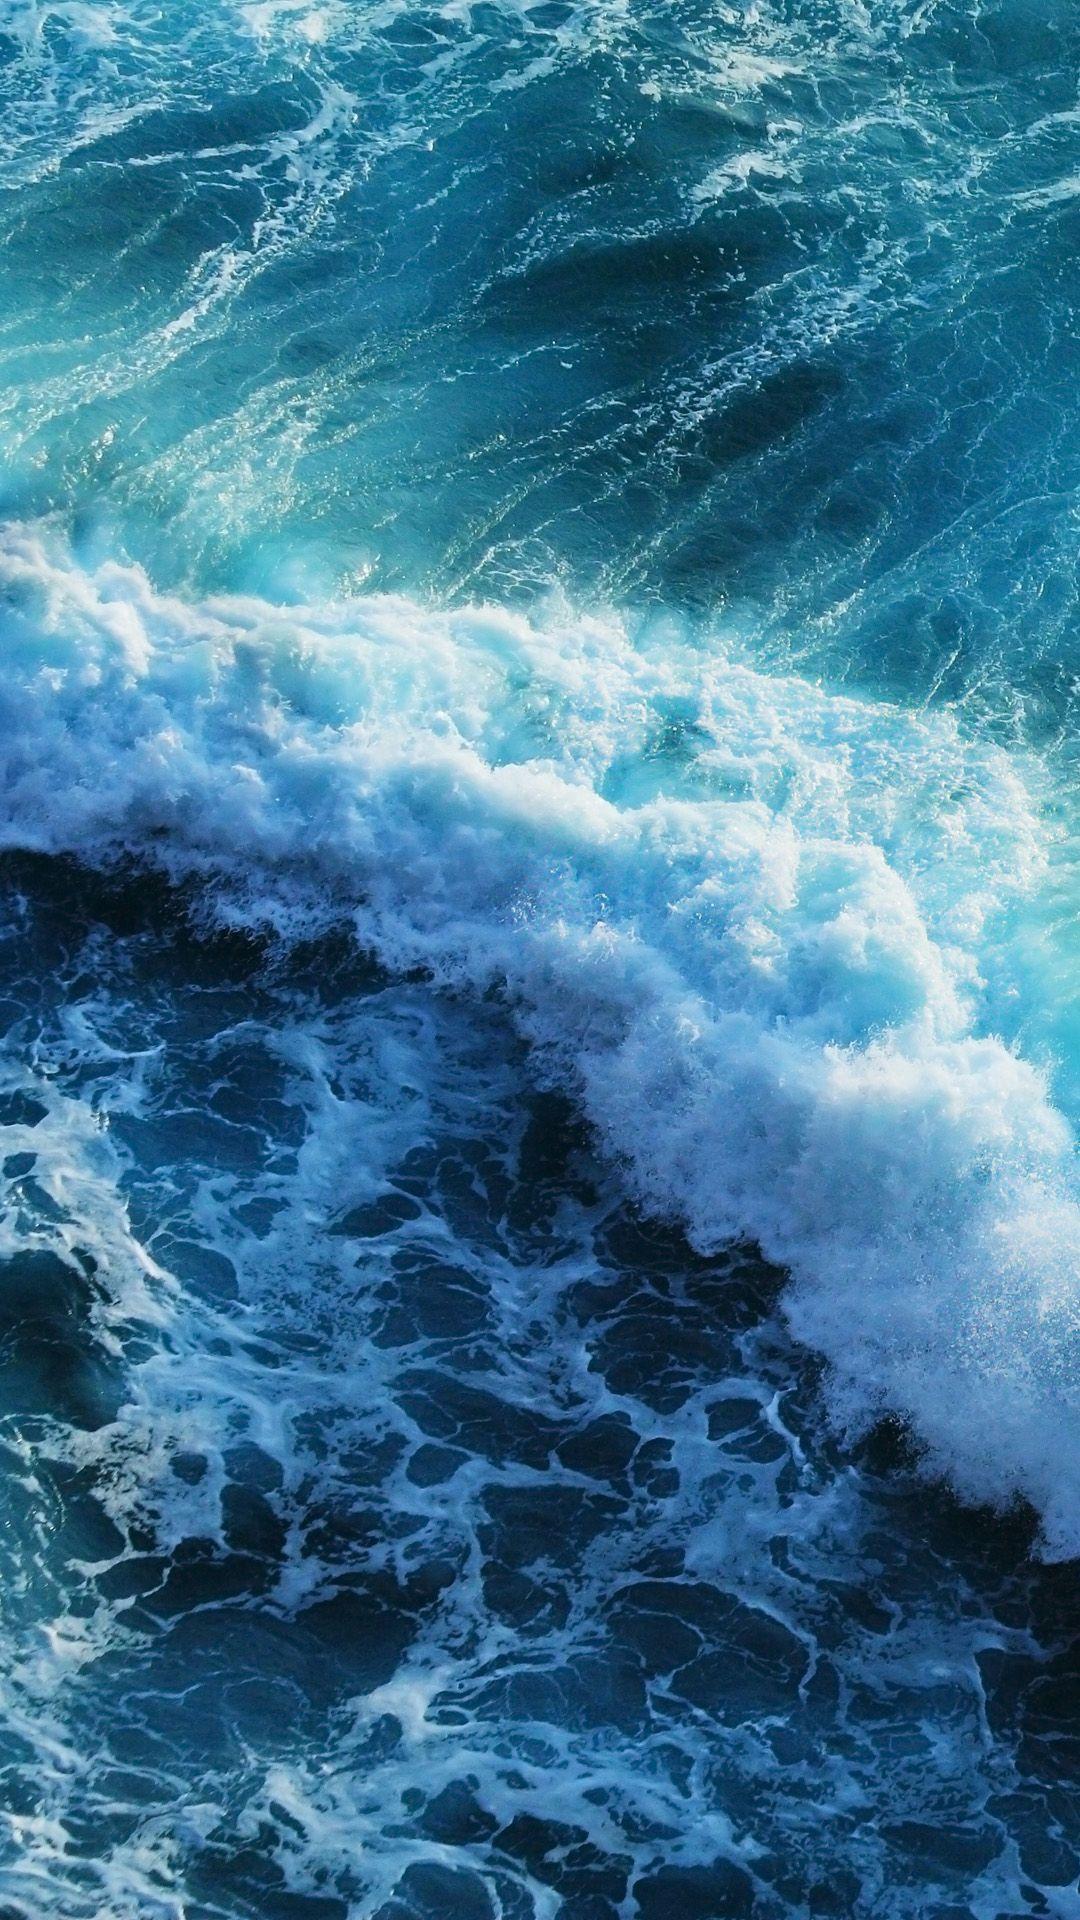 Tận hưởng trải nghiệm khác biệt từ hình nền sóng biển cho iPhone của bạn. Sự sống động và mê hoặc của sóng biển sẽ khiến cho mỗi lần mở khóa điện thoại bạn trở nên đặc biệt hơn bao giờ hết. Hãy xem hình ảnh để cảm nhận được sự tuyệt vời của hình nền sóng biển cho iPhone. 